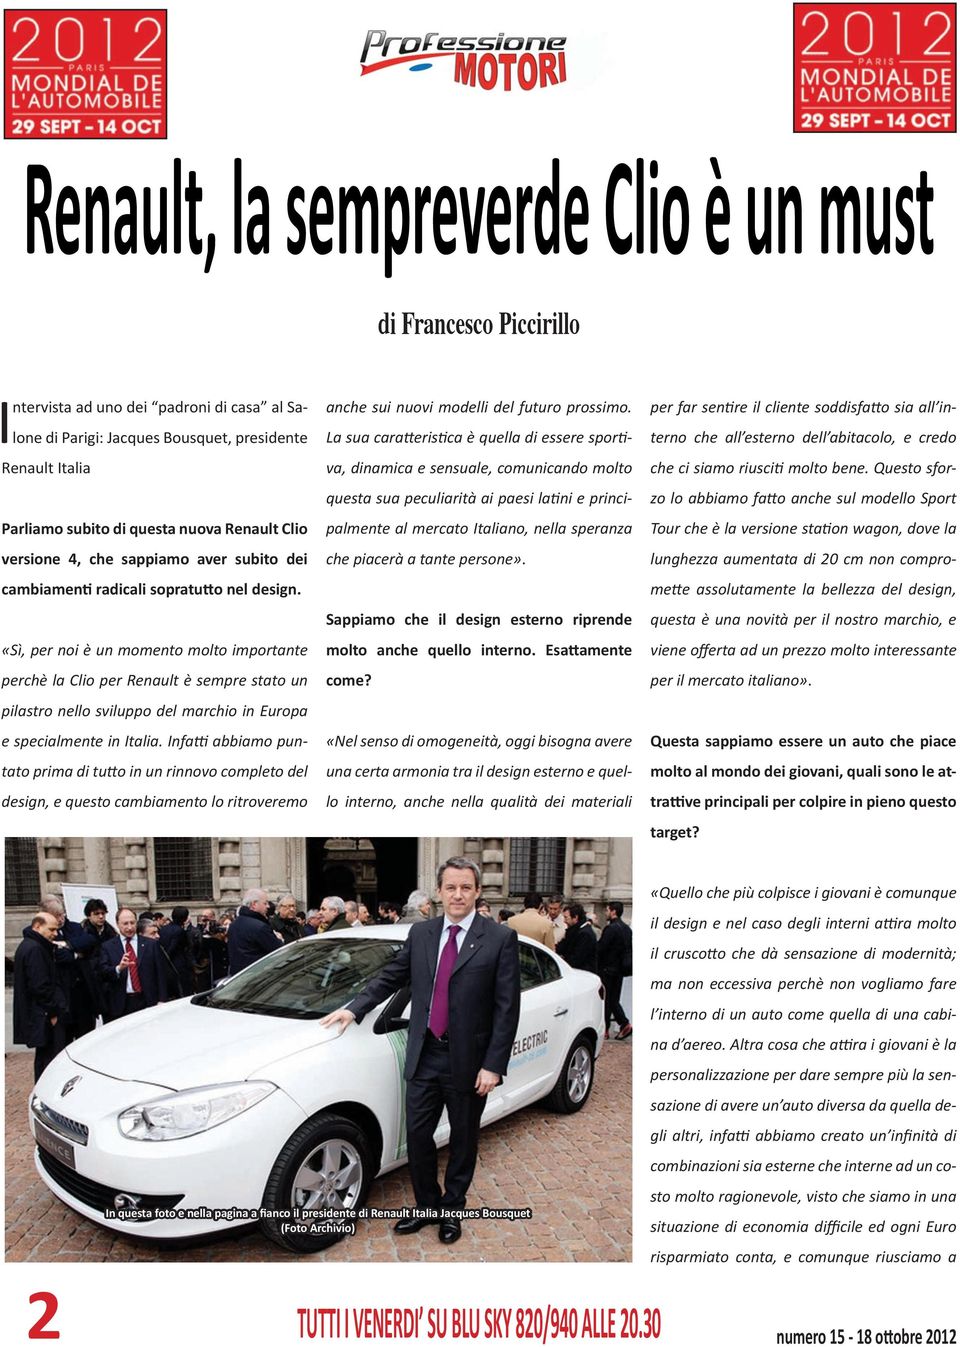 «Sì, per noi è un momento molto importante perchè la Clio per Renault è sempre stato un pilastro nello sviluppo del marchio in Europa e specialmente in Italia.